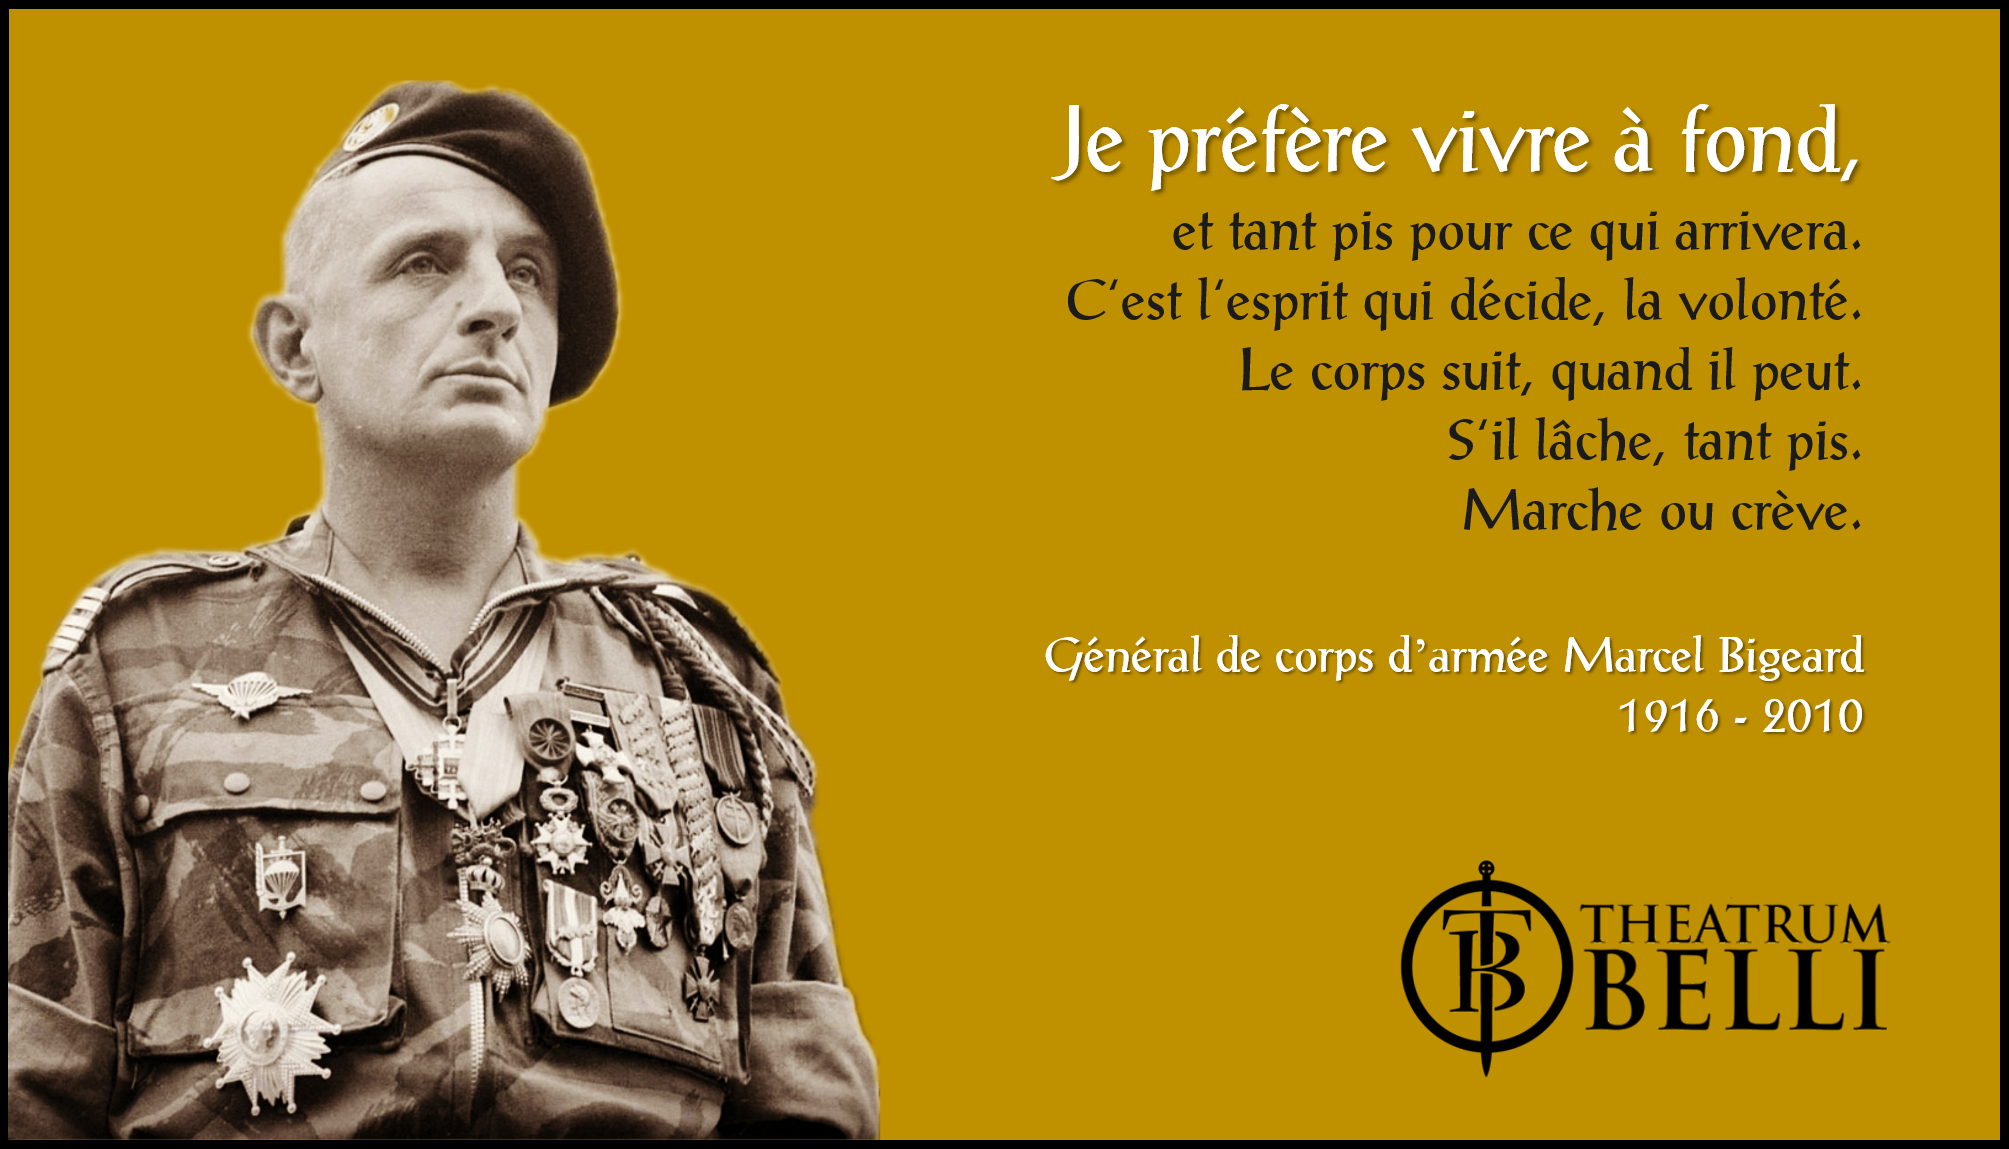 14 février 1916 : Naissance du futur général Marcel Bigeard (Indicatif Bruno)